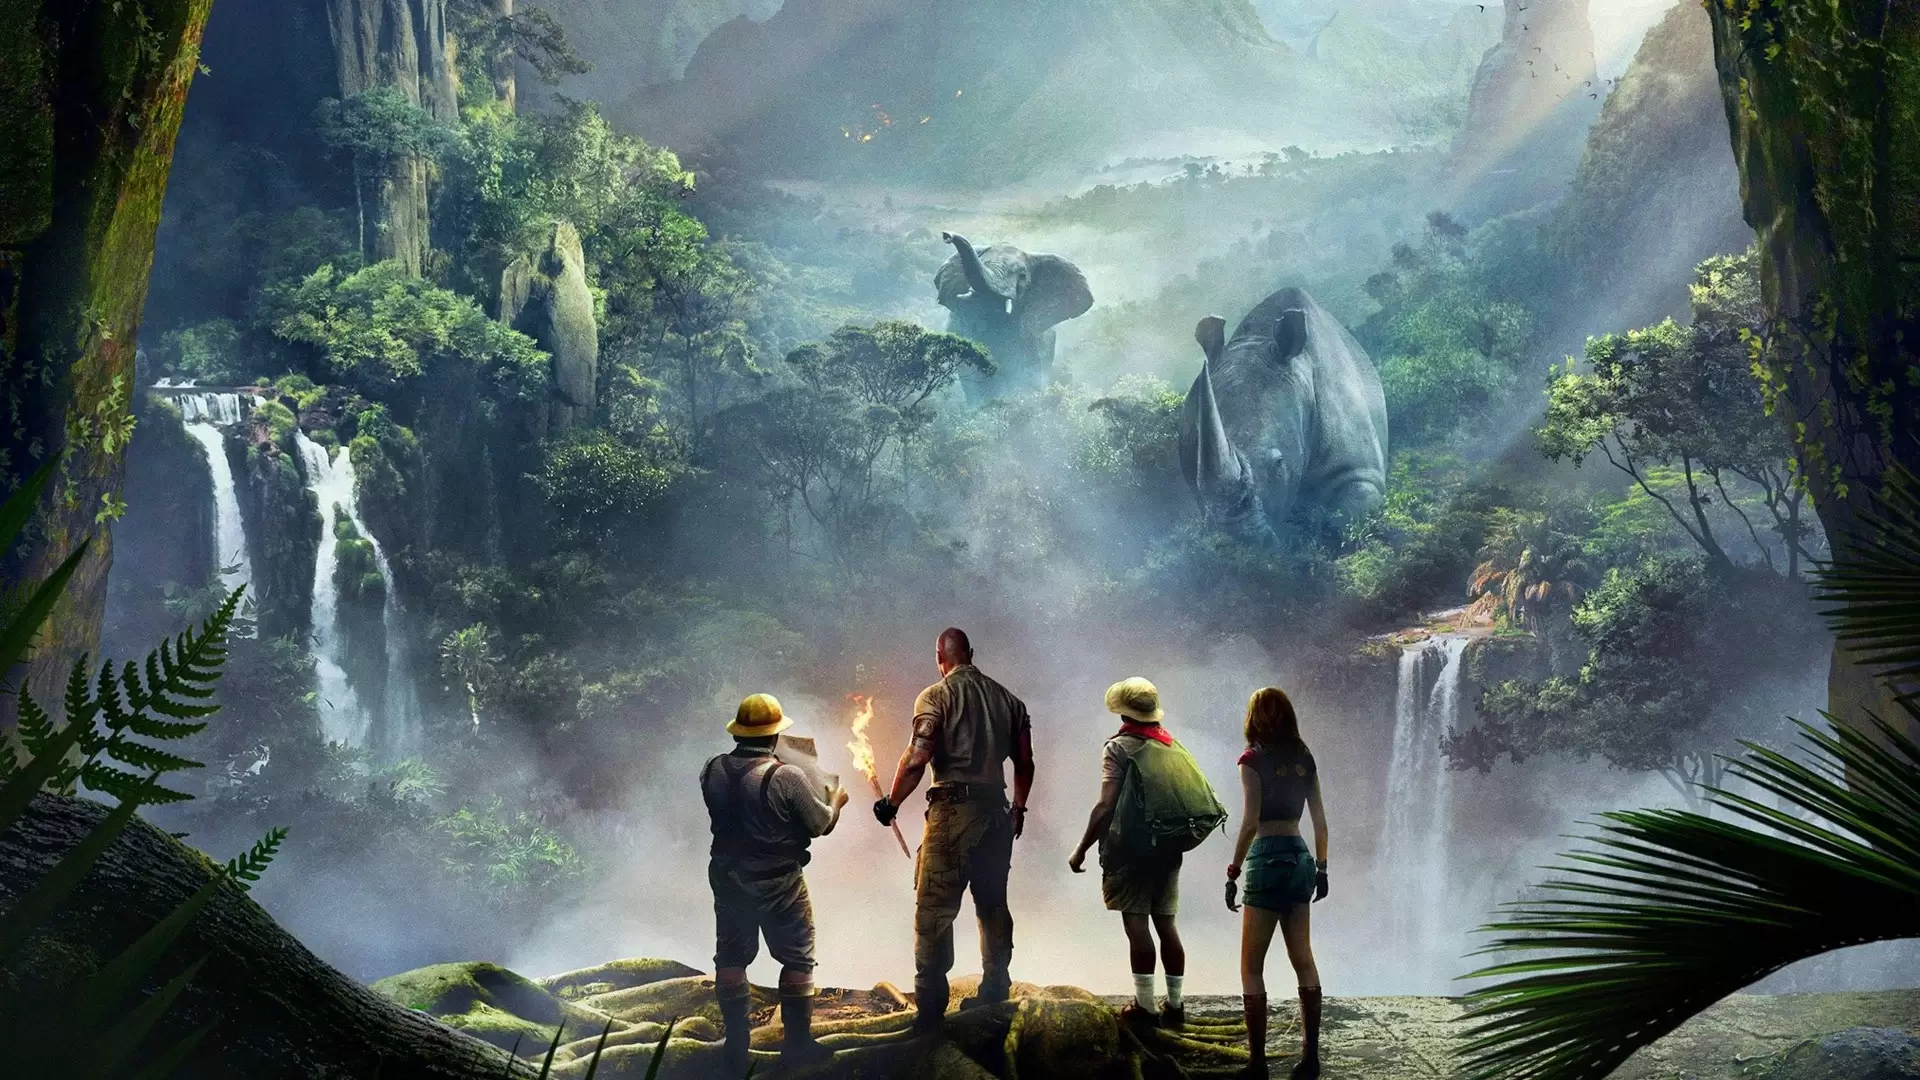 دانلود فیلم Jumanji: Welcome to the Jungle 2017 (جومانجی: به جنگل خوش آمدید) با تماشای آنلاین